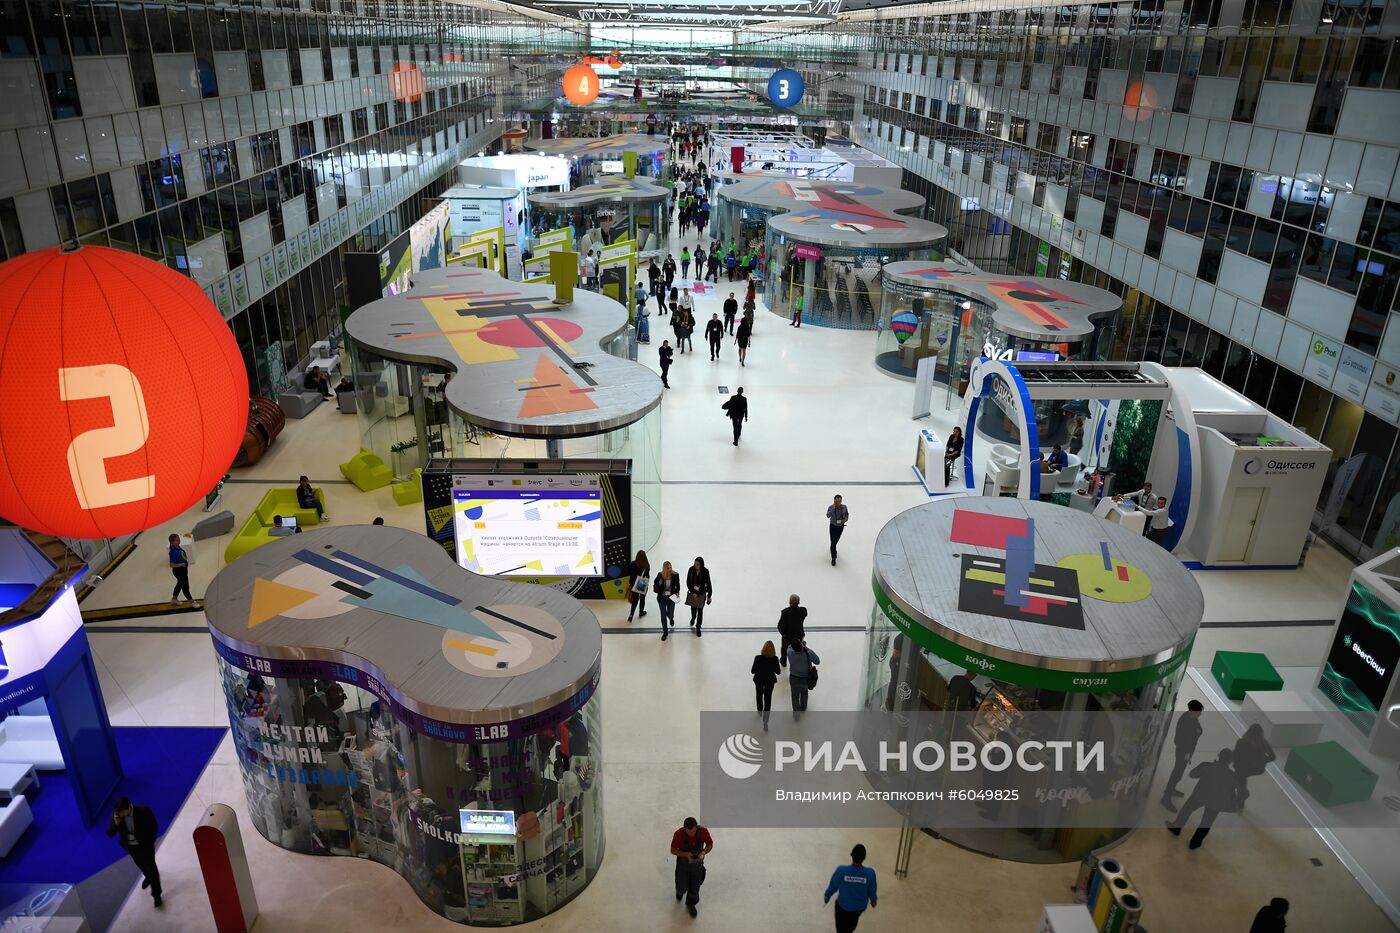 Московский международный форум "Открытые инновации" 